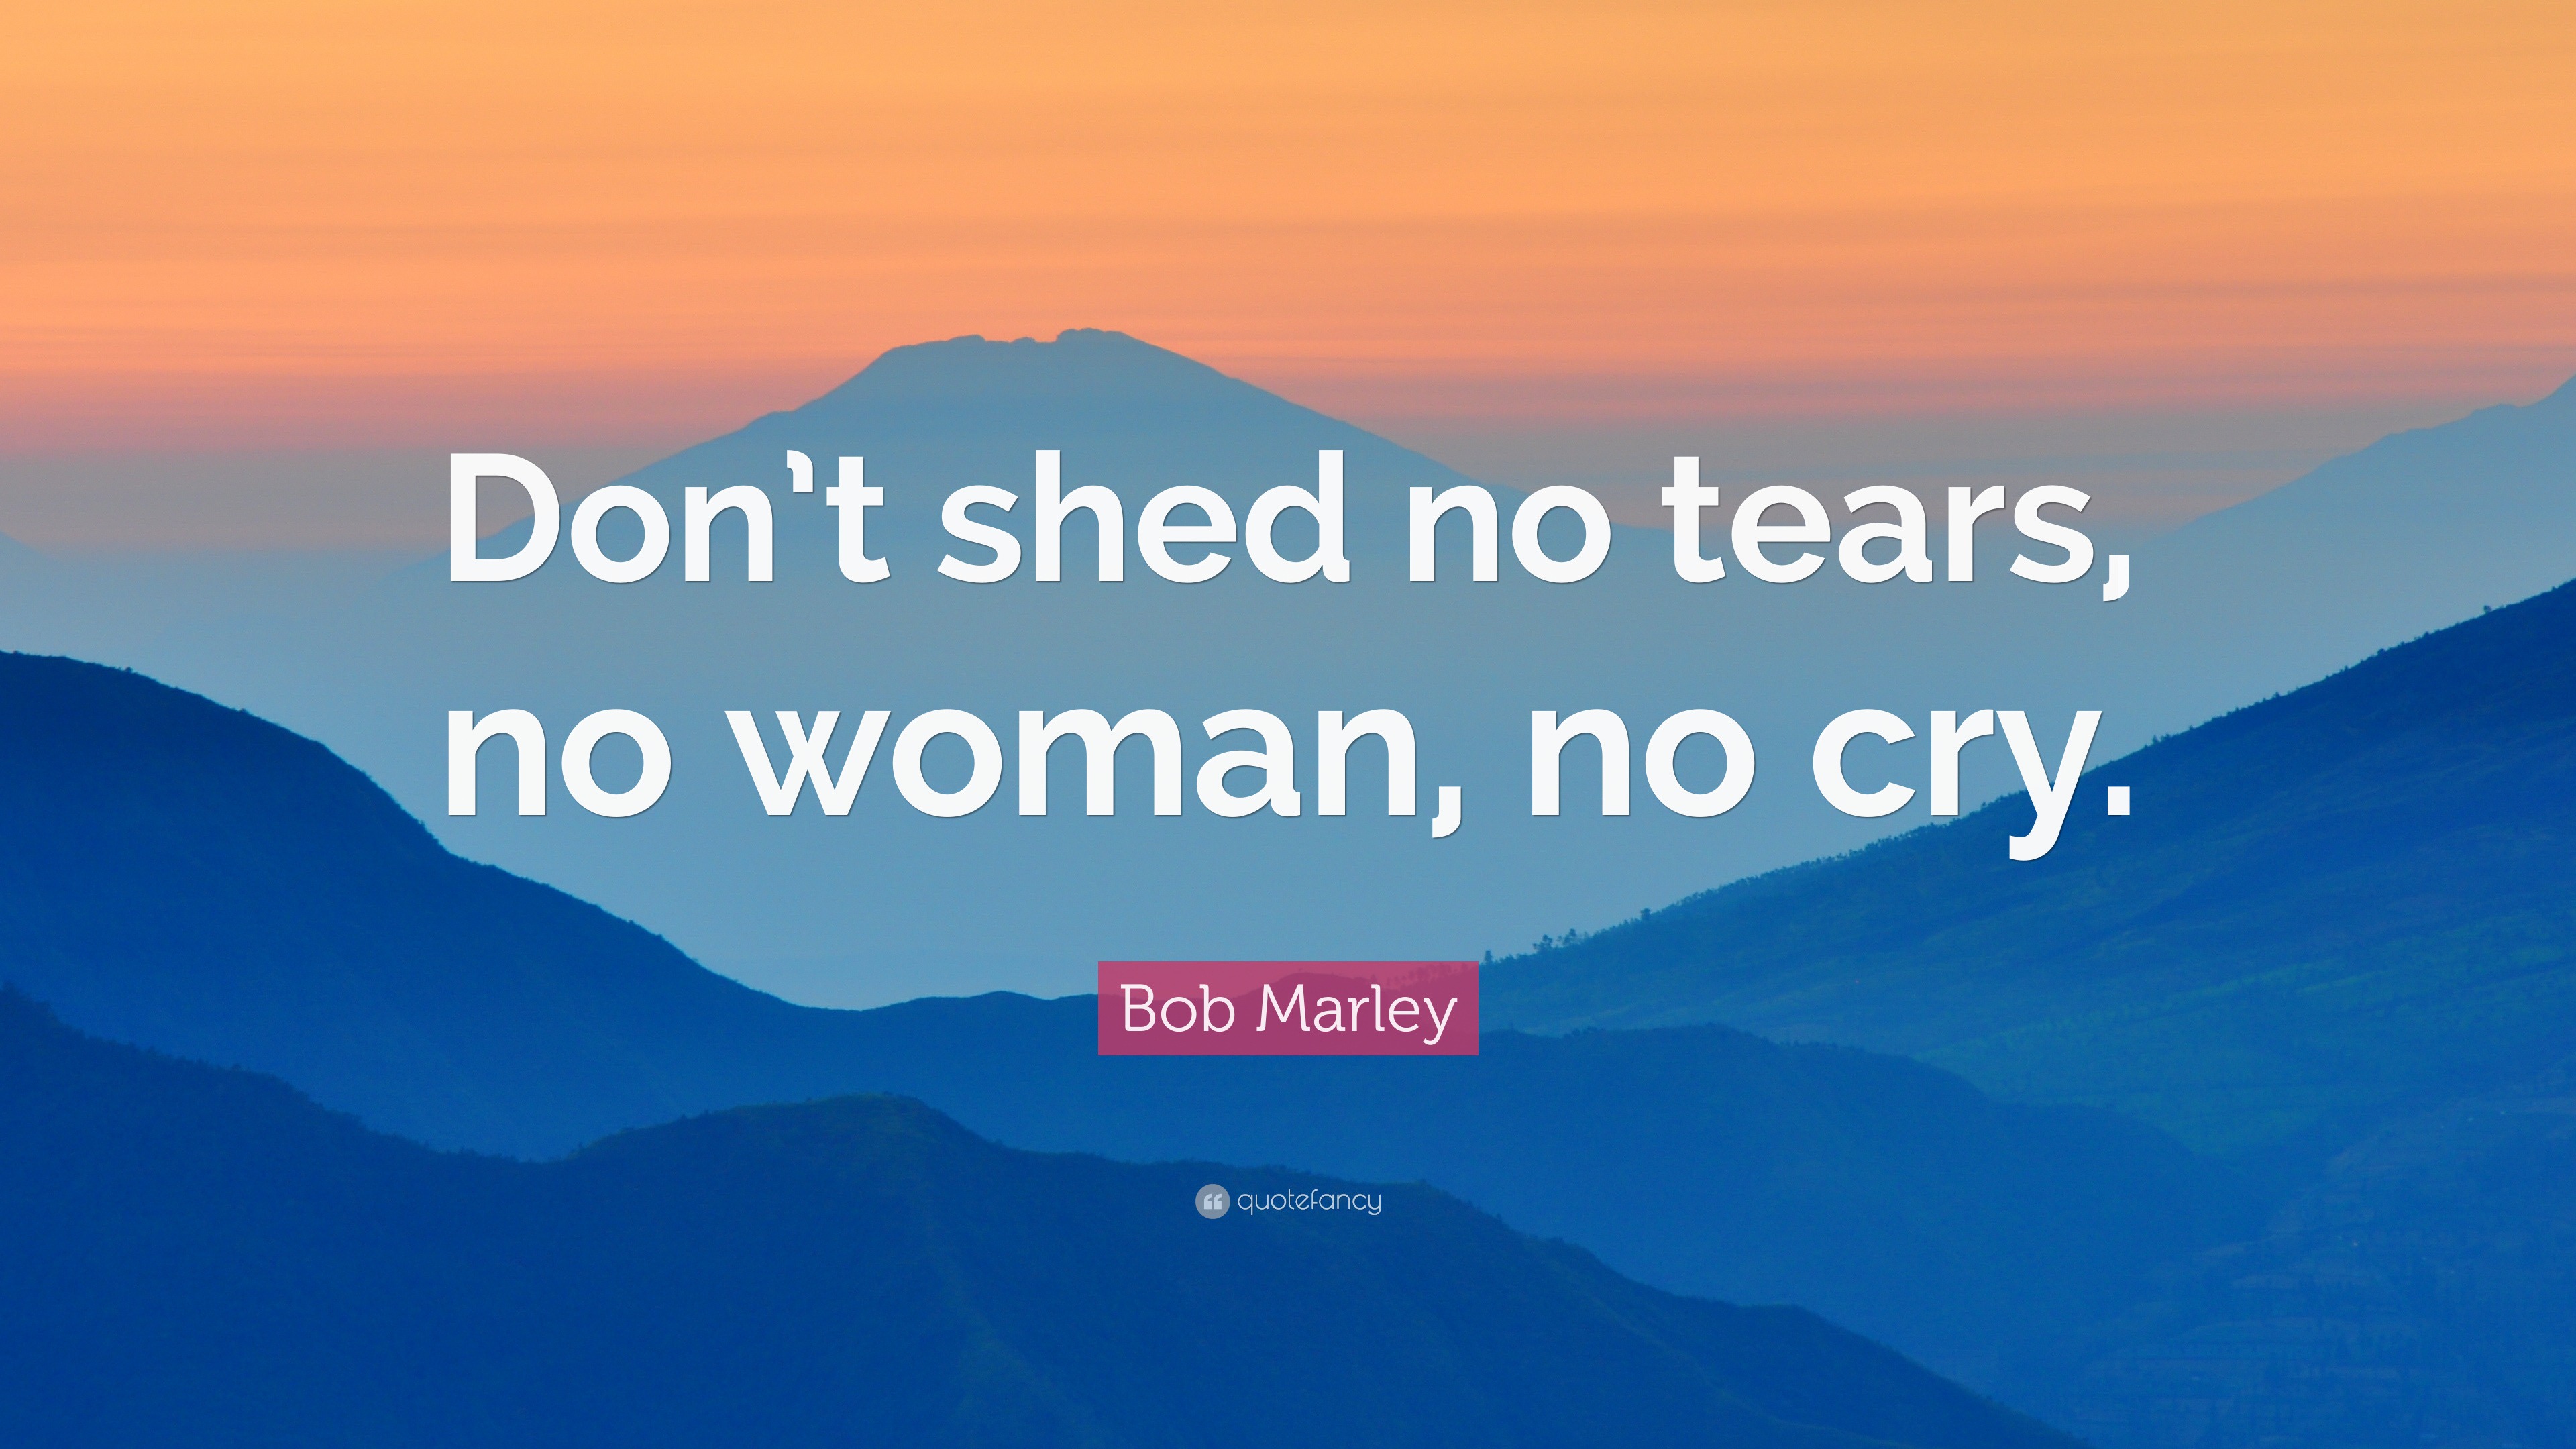 Bob Marley Quote: No, woman, no cry.